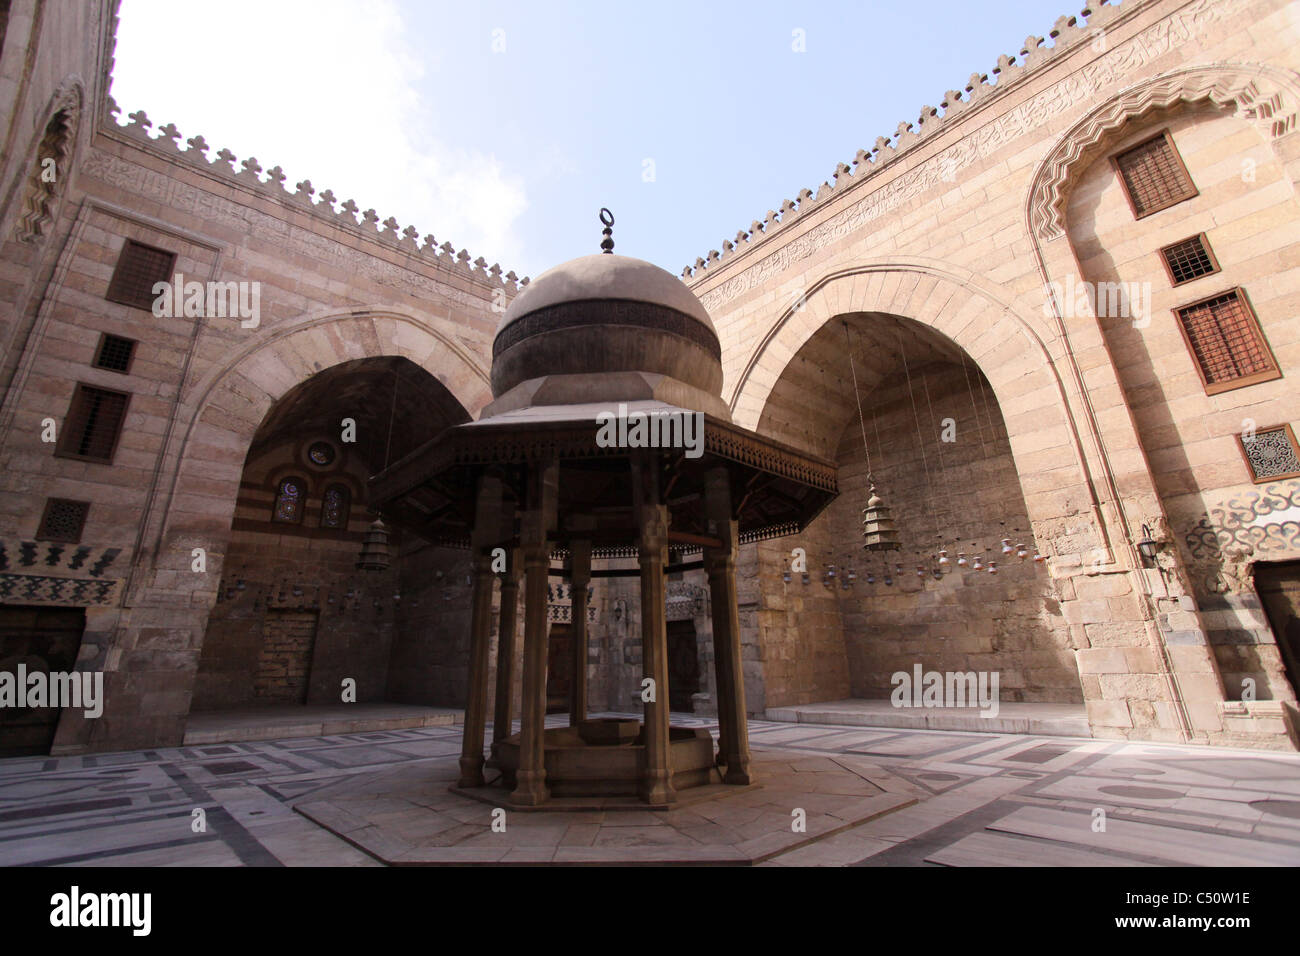 El tribunal de la Mezquita de El sultán Barquq- Cairo antiguo - al-muizz street Foto de stock